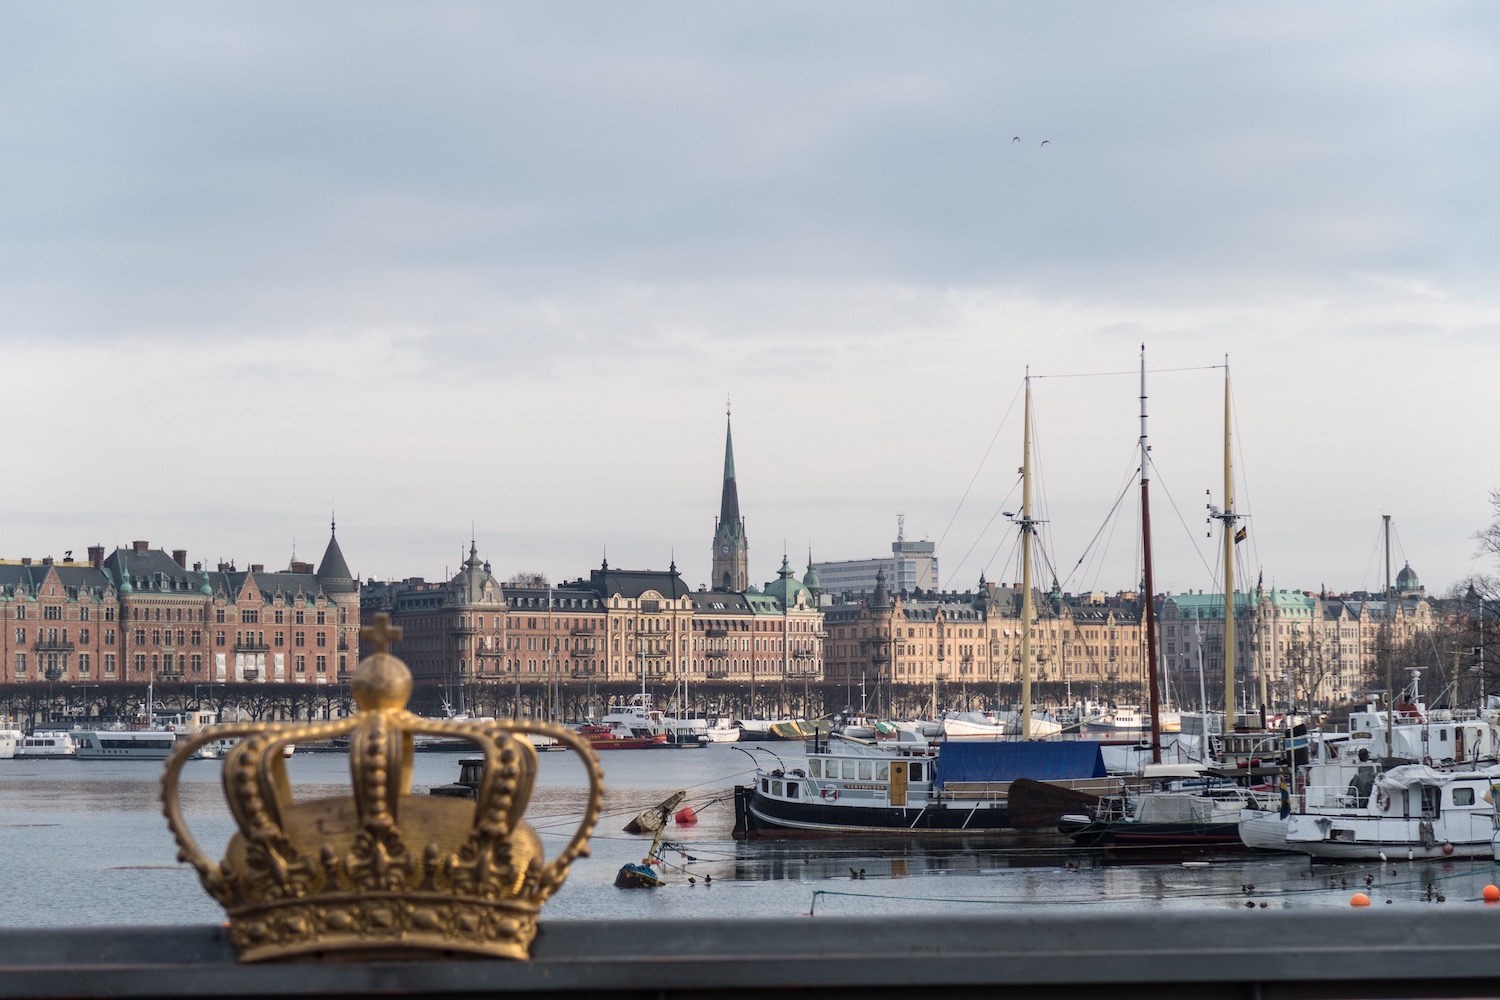 Im Vordergrund eine Krone, im Hintergrund hanseatische große Häuser, dazwischen Segelboote auf dem Wasser